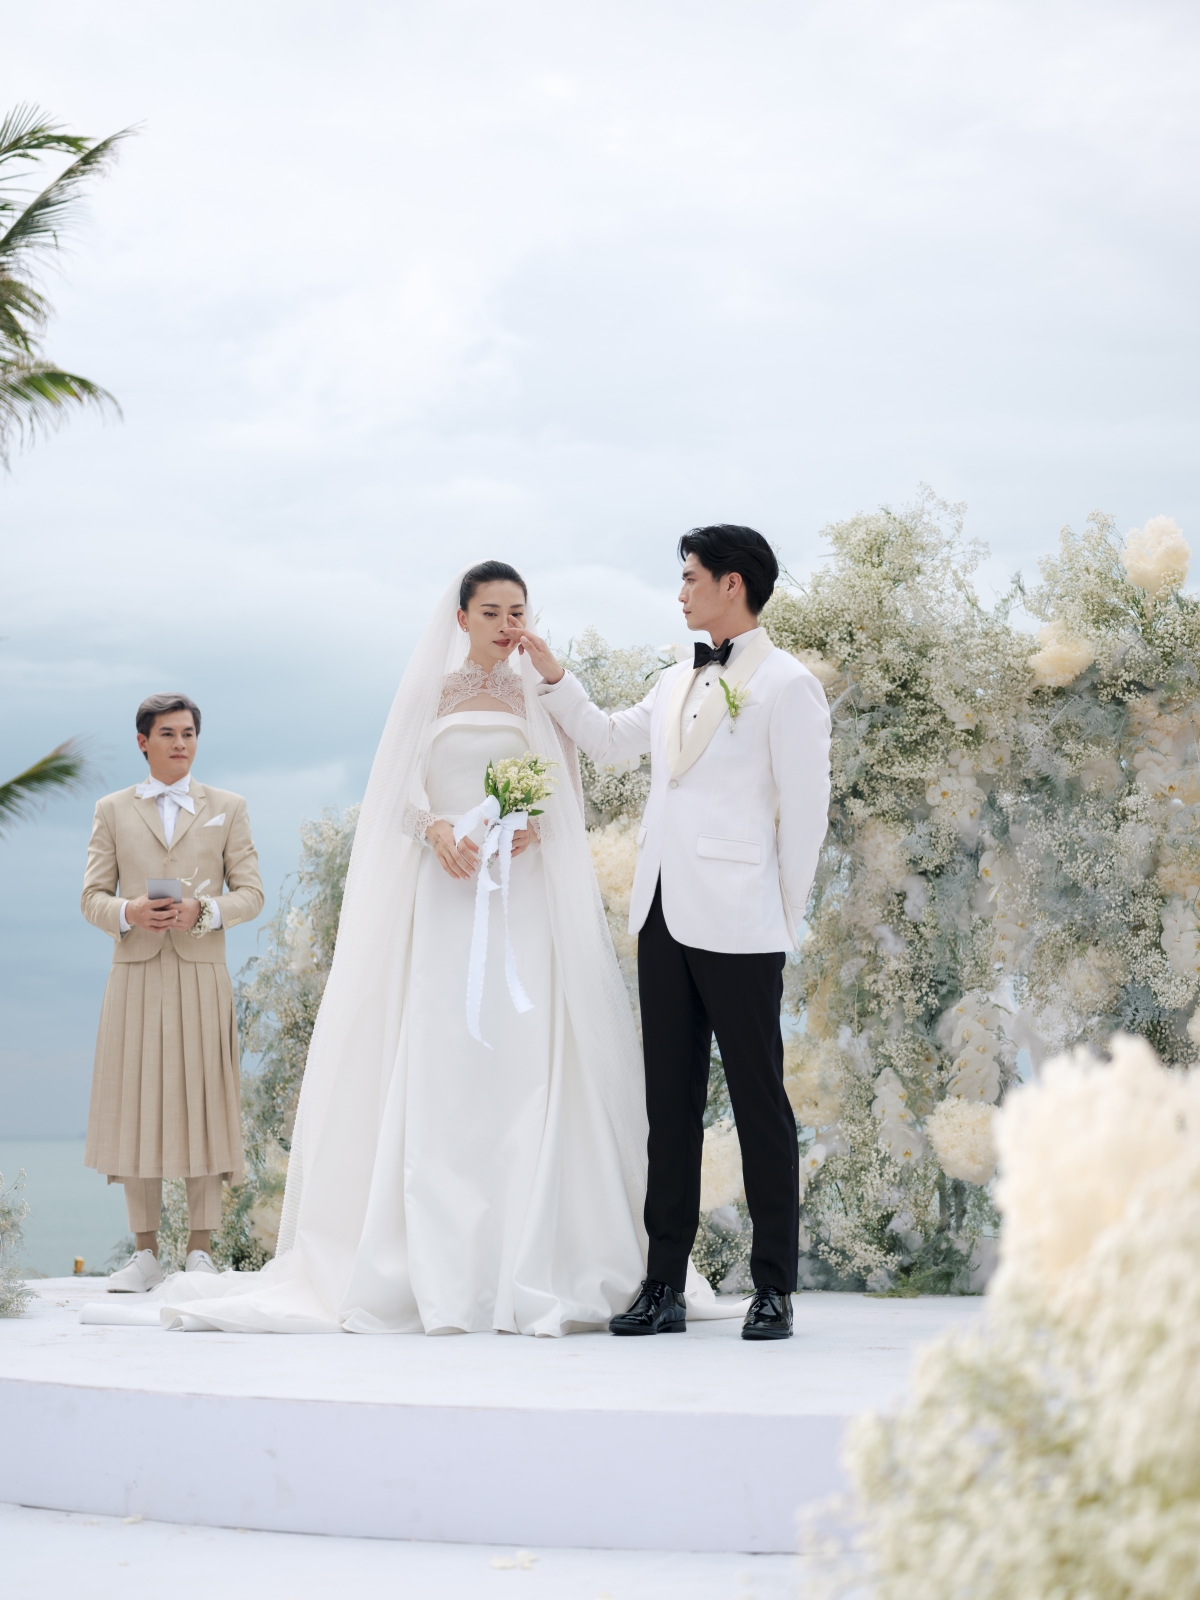 Hoa cầm tay trong đám cưới Ngô Thanh Vân thuộc top đắt đỏ nhất thế giới - Ảnh 2.